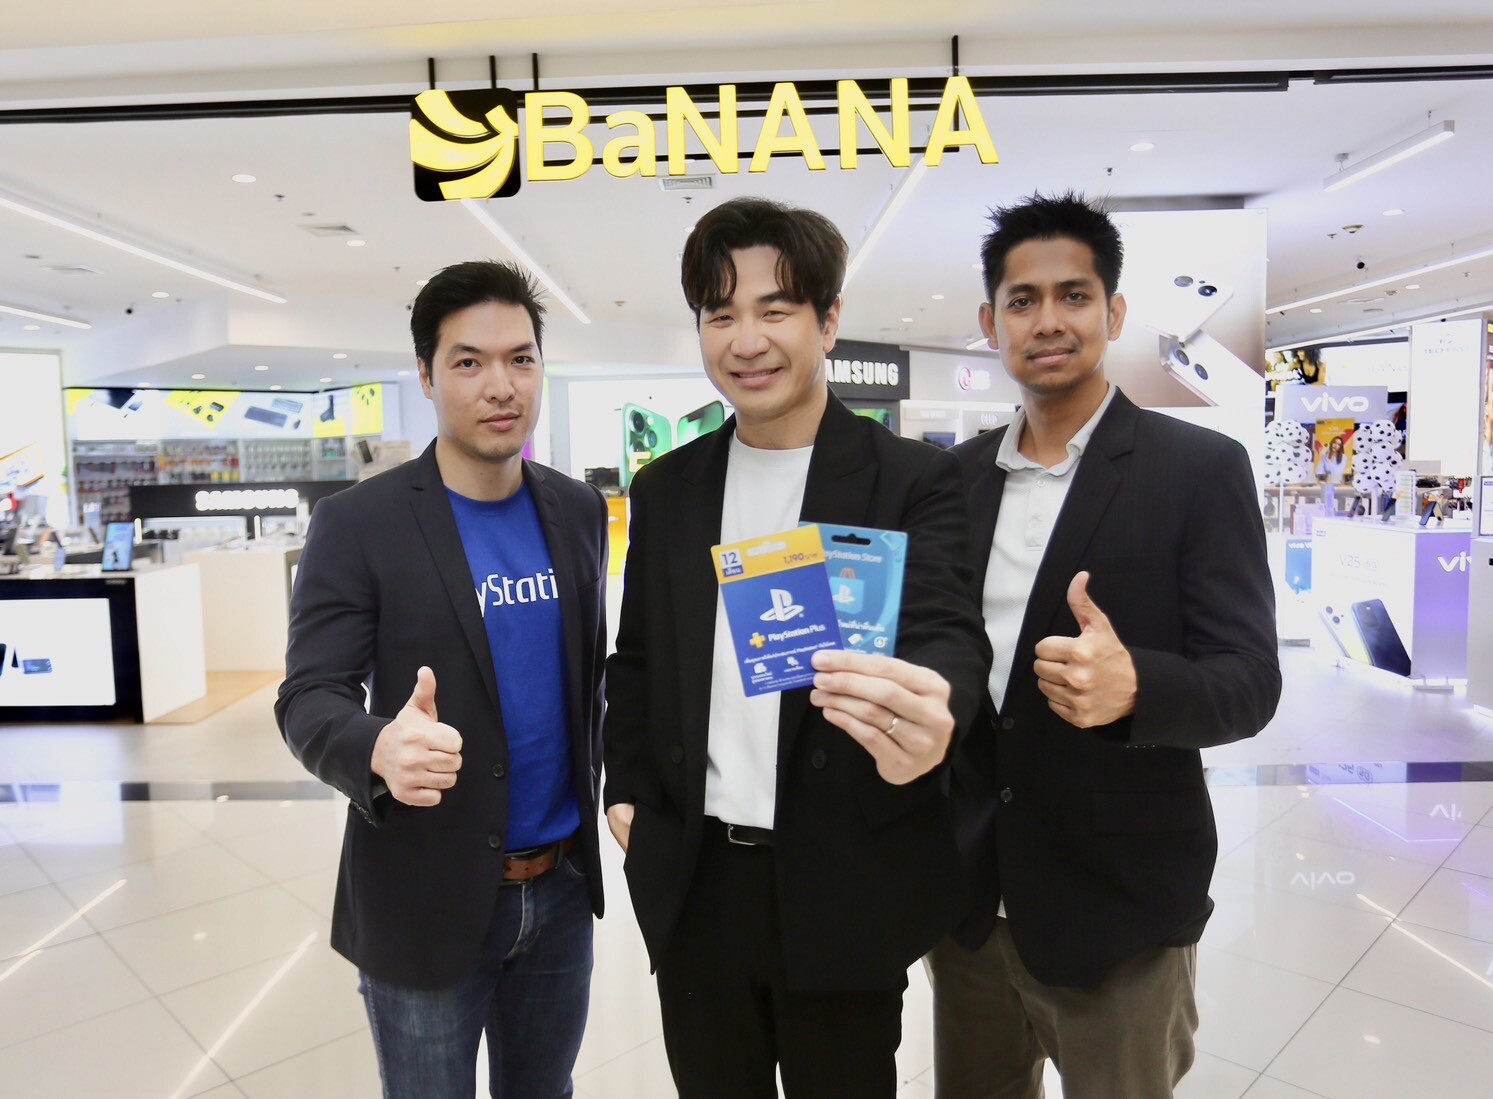 "คอมเซเว่น" ตอบรับดีมานด์ตลาดเกมมิ่งไทย ส่งบัตรของขวัญ PlayStation(R) วางจำหน่ายร้าน BaNANA และร้านค้าในเครือ ทั่วประเทศ